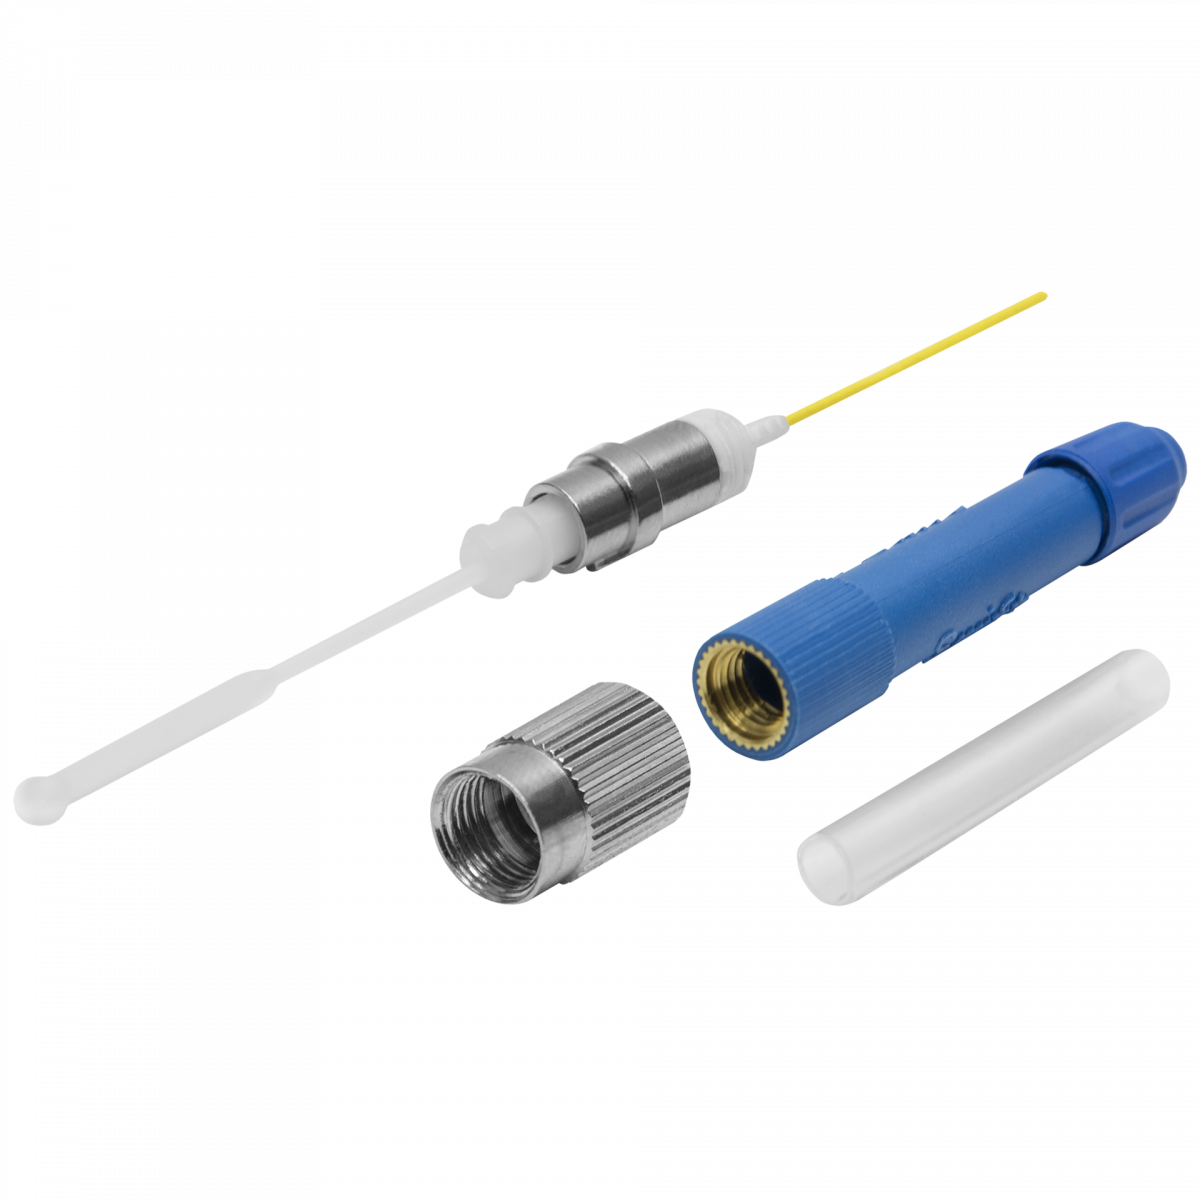 Разъем оптический Ilsintech "Splice-On Connector" FC/UPC для кабеля 3,0 мм / 2,0 х 3,1